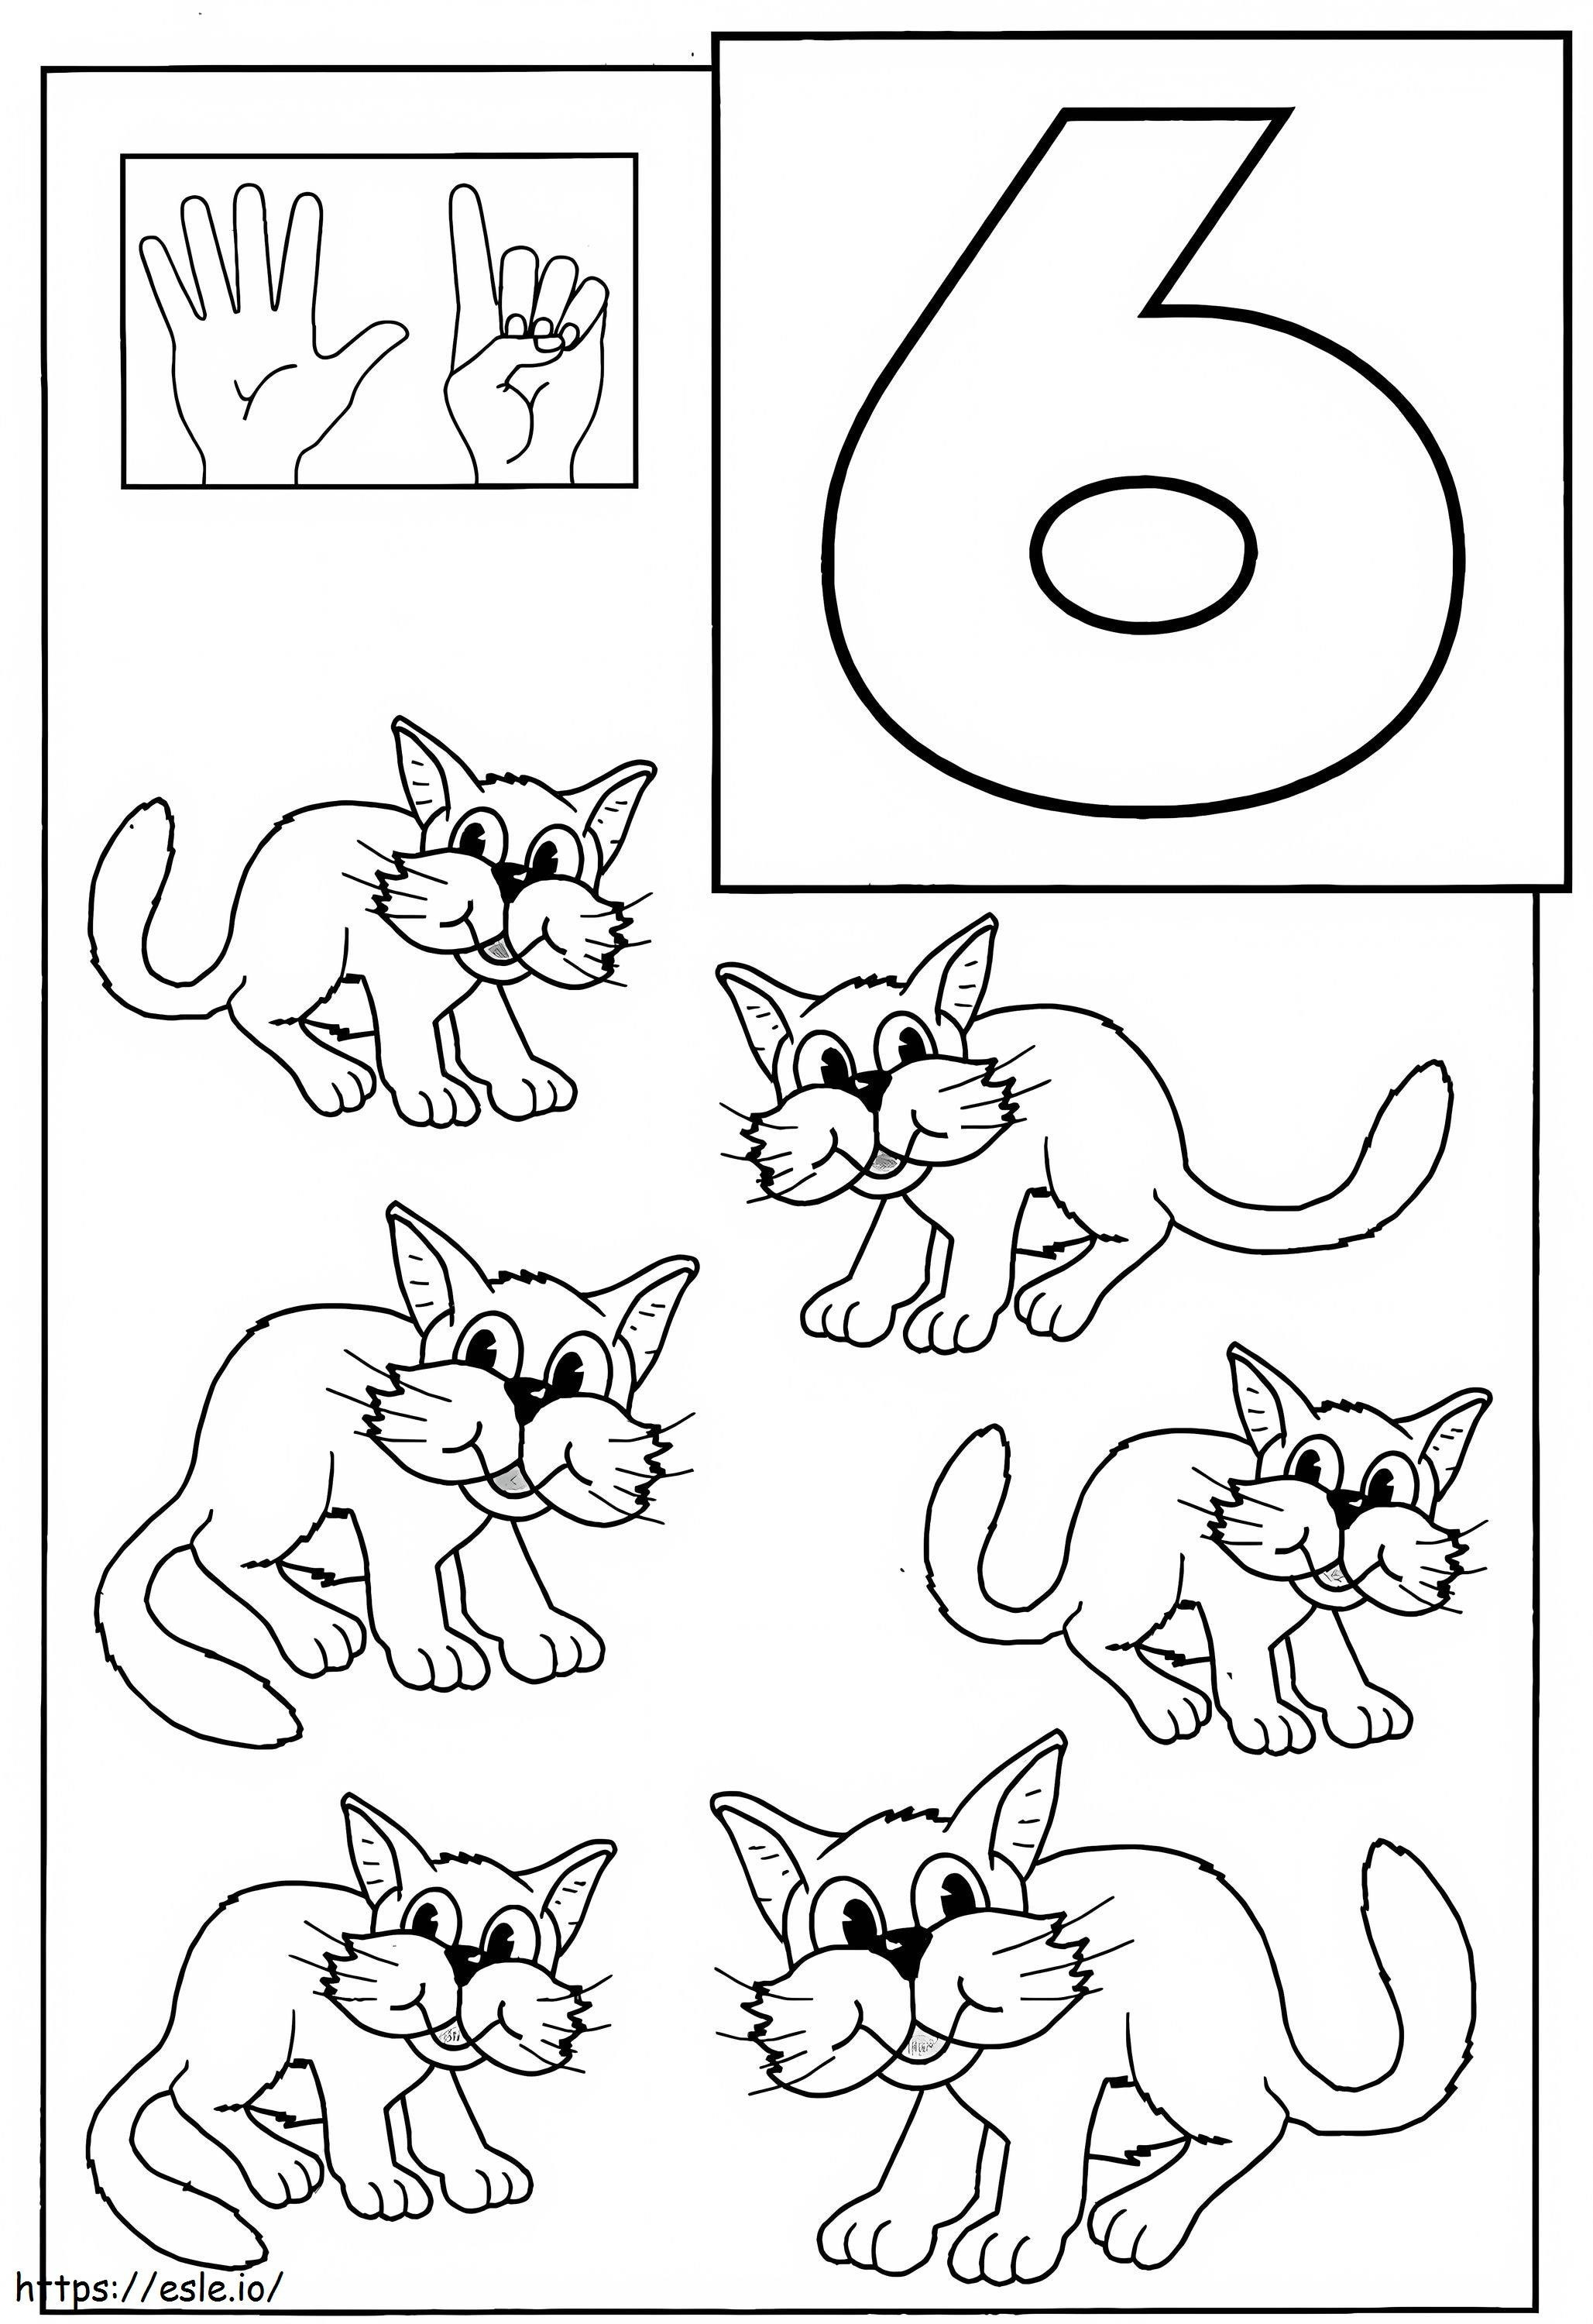 Katze Nummer sechs und sechs ausmalbilder